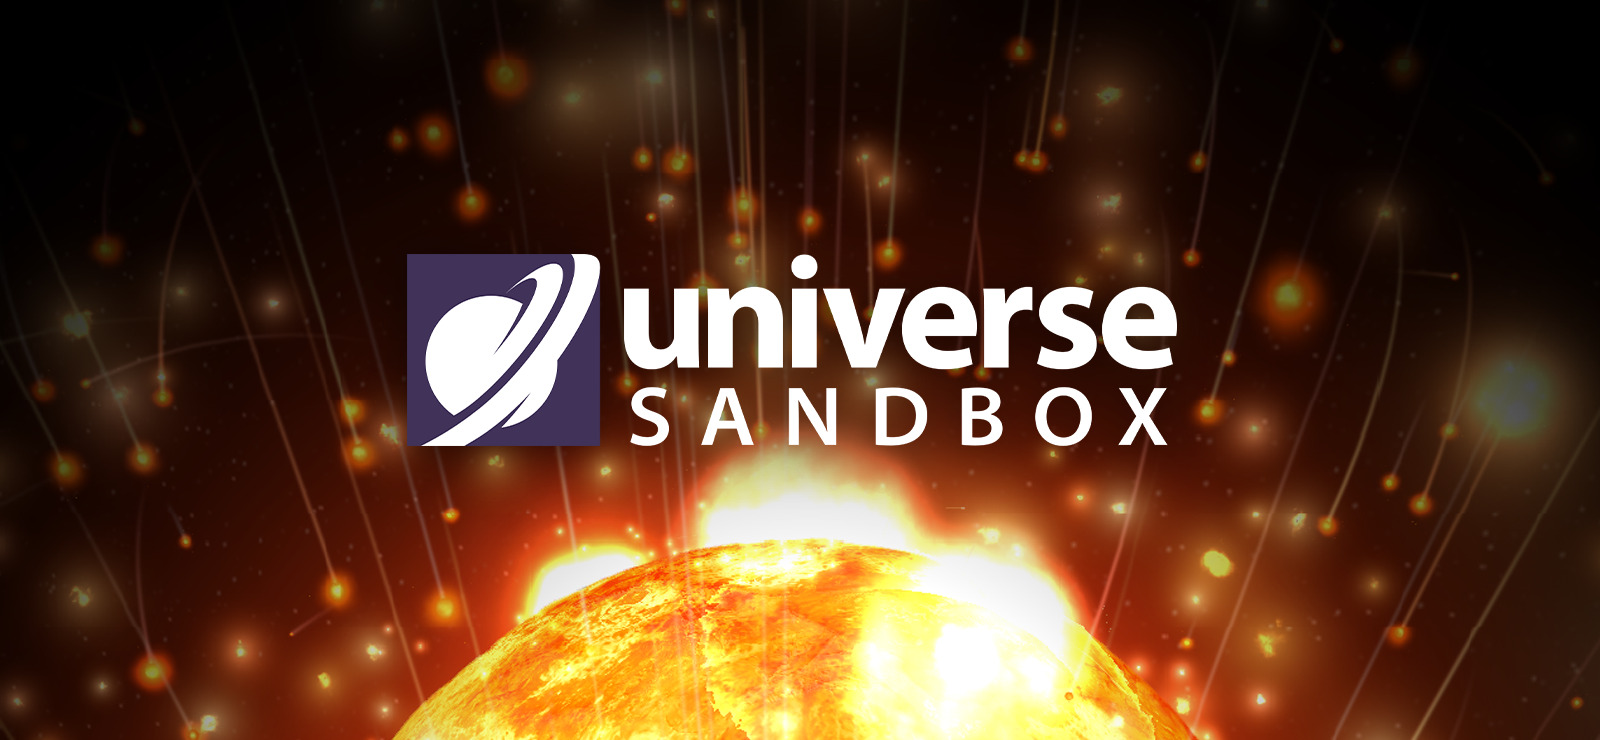 download university sandbox free mac